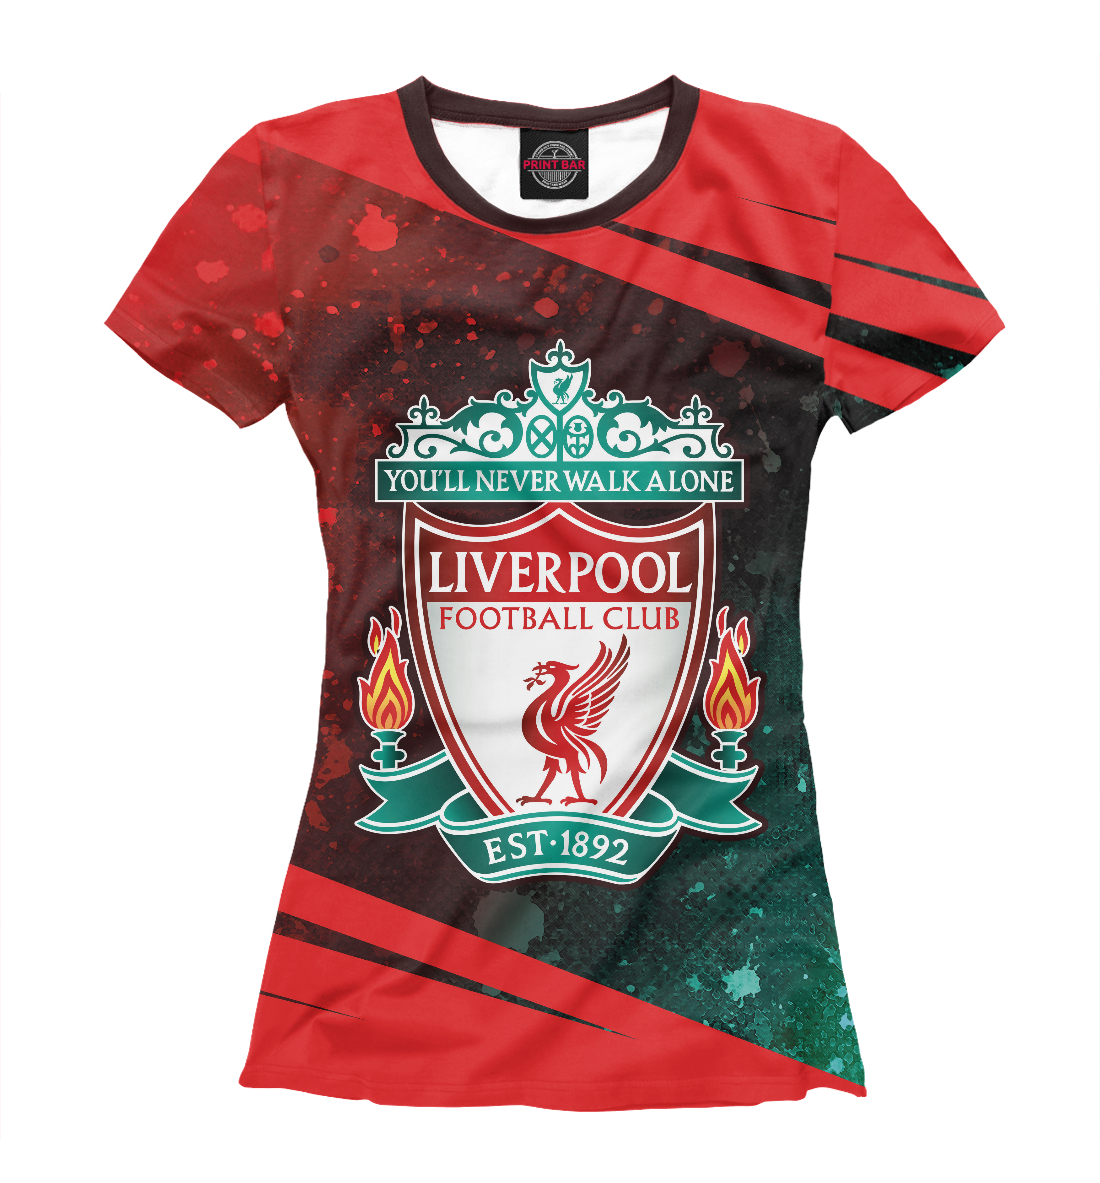 Футболка Liverpool / Ливерпуль для женщин, артикул: LVP-675118-fut-1mp